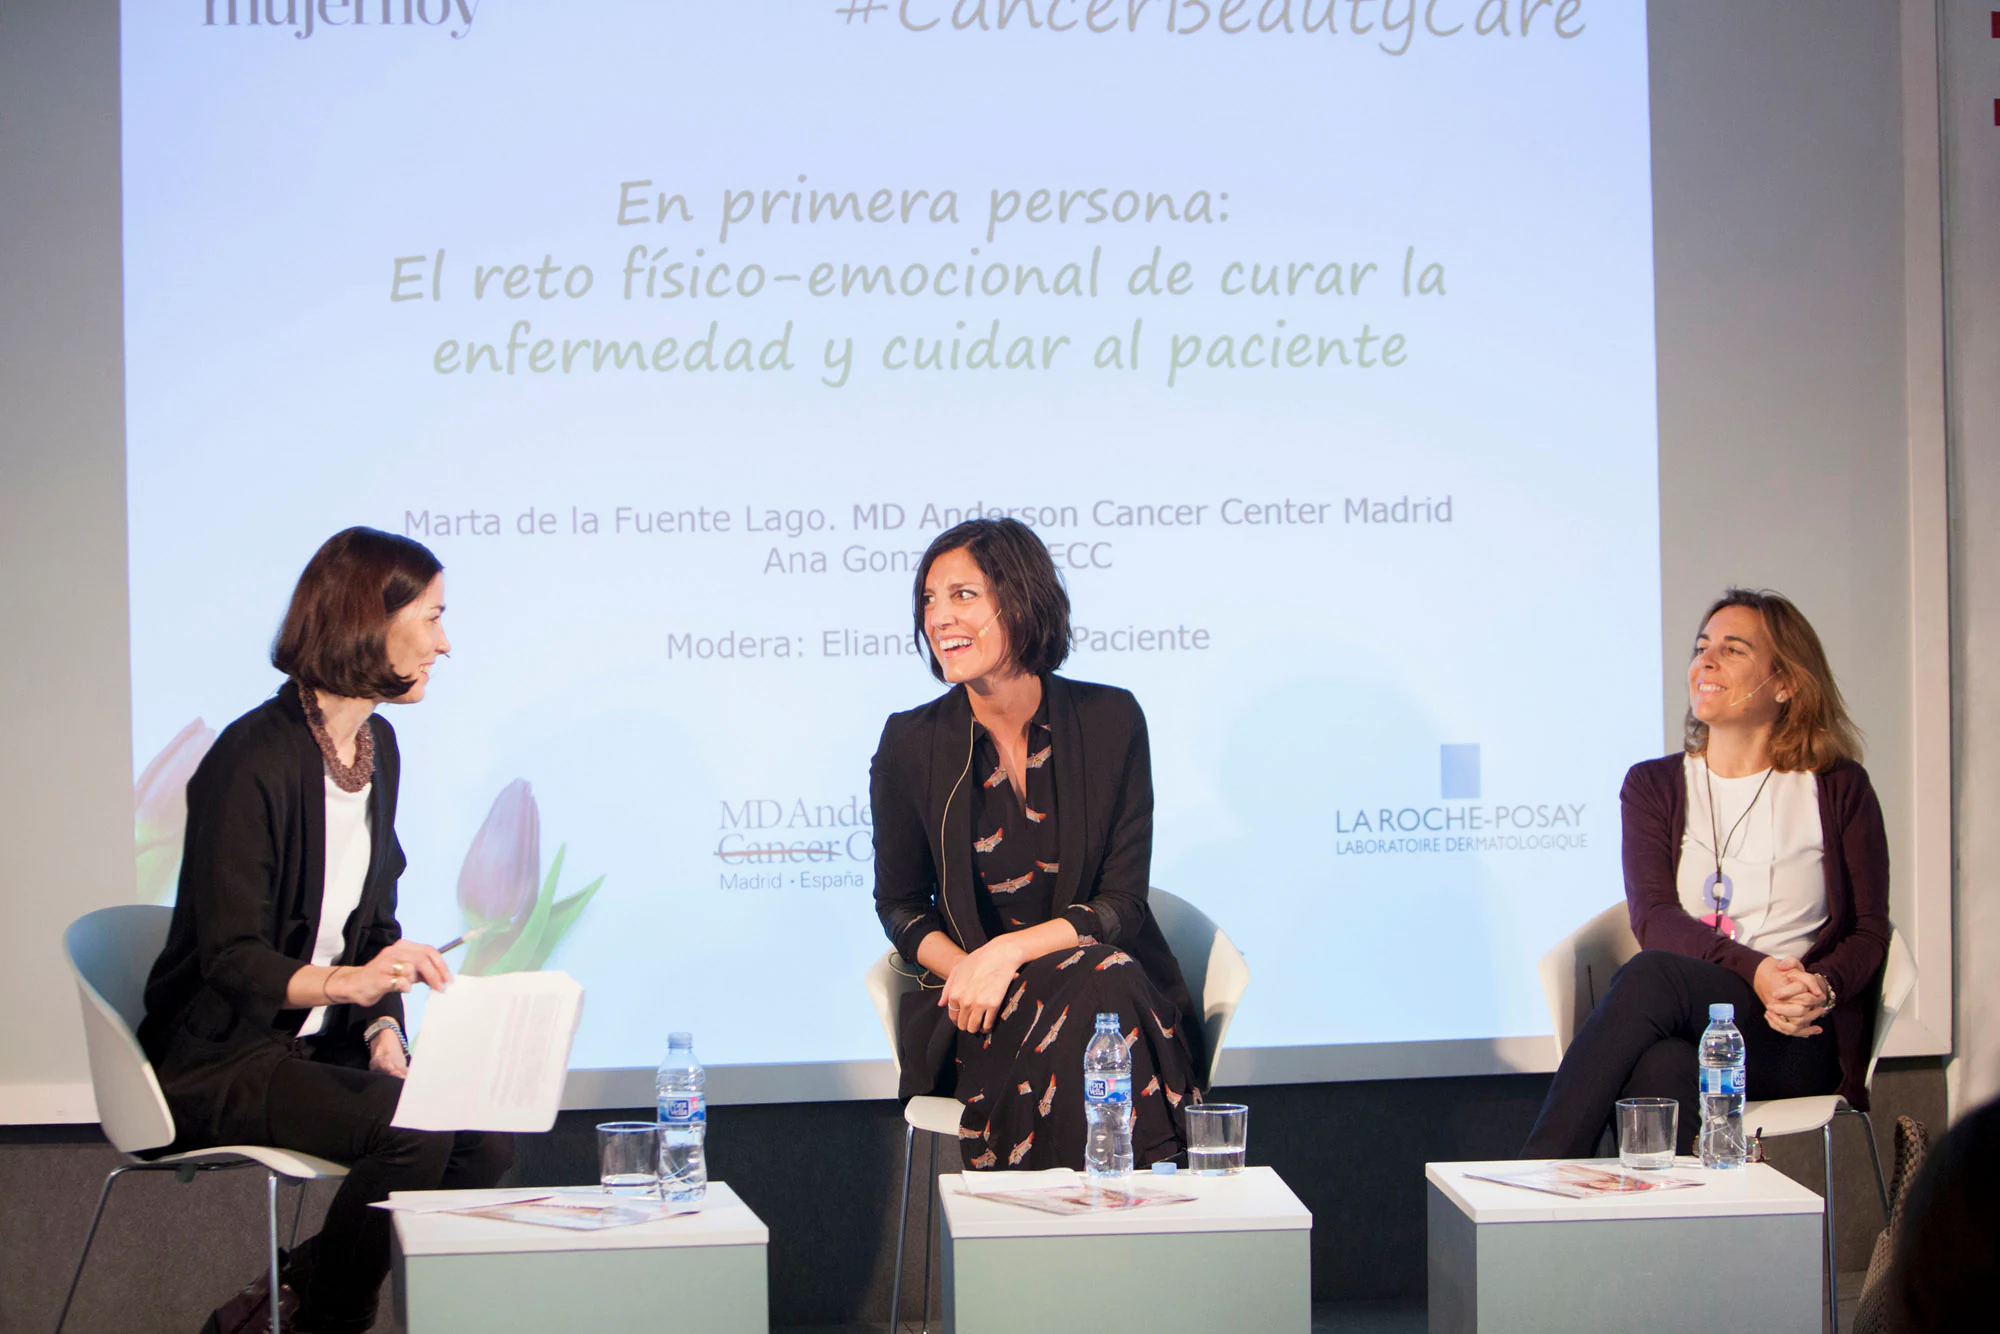 IV Cancer Beauty Care: sentimientos y emociones tras el diagnóstico